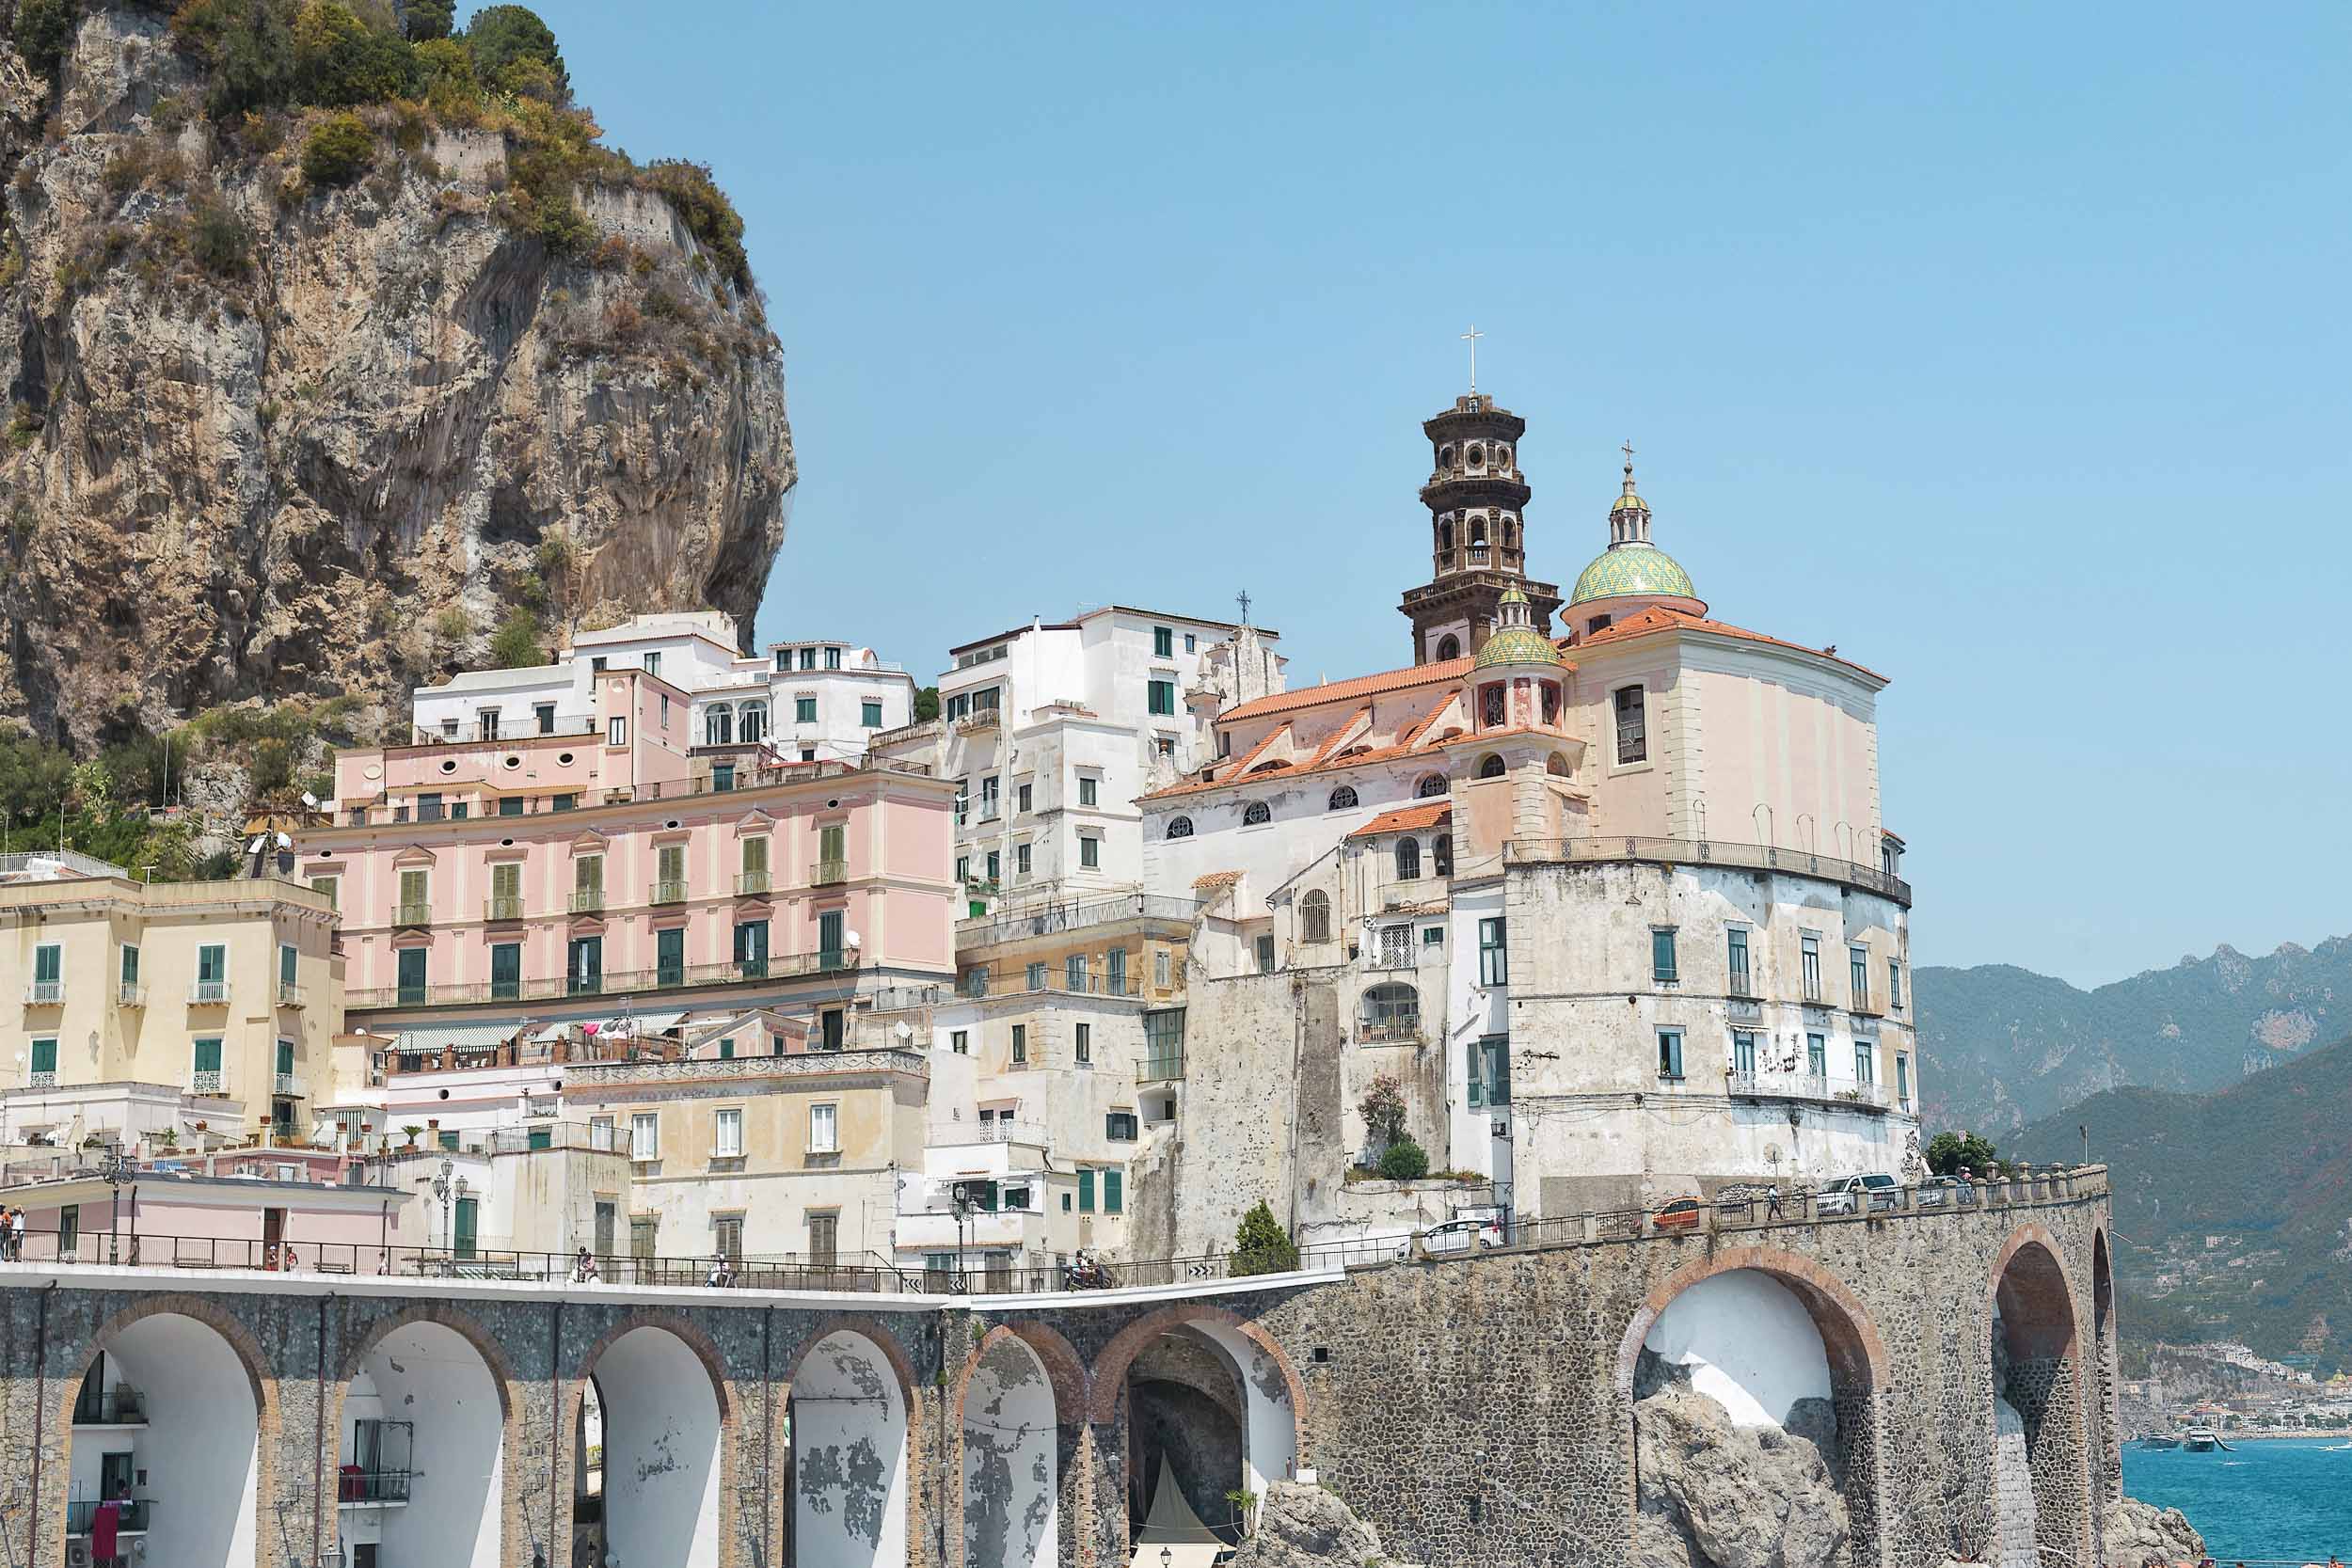 The town of Atrani on the Amalfi Coast